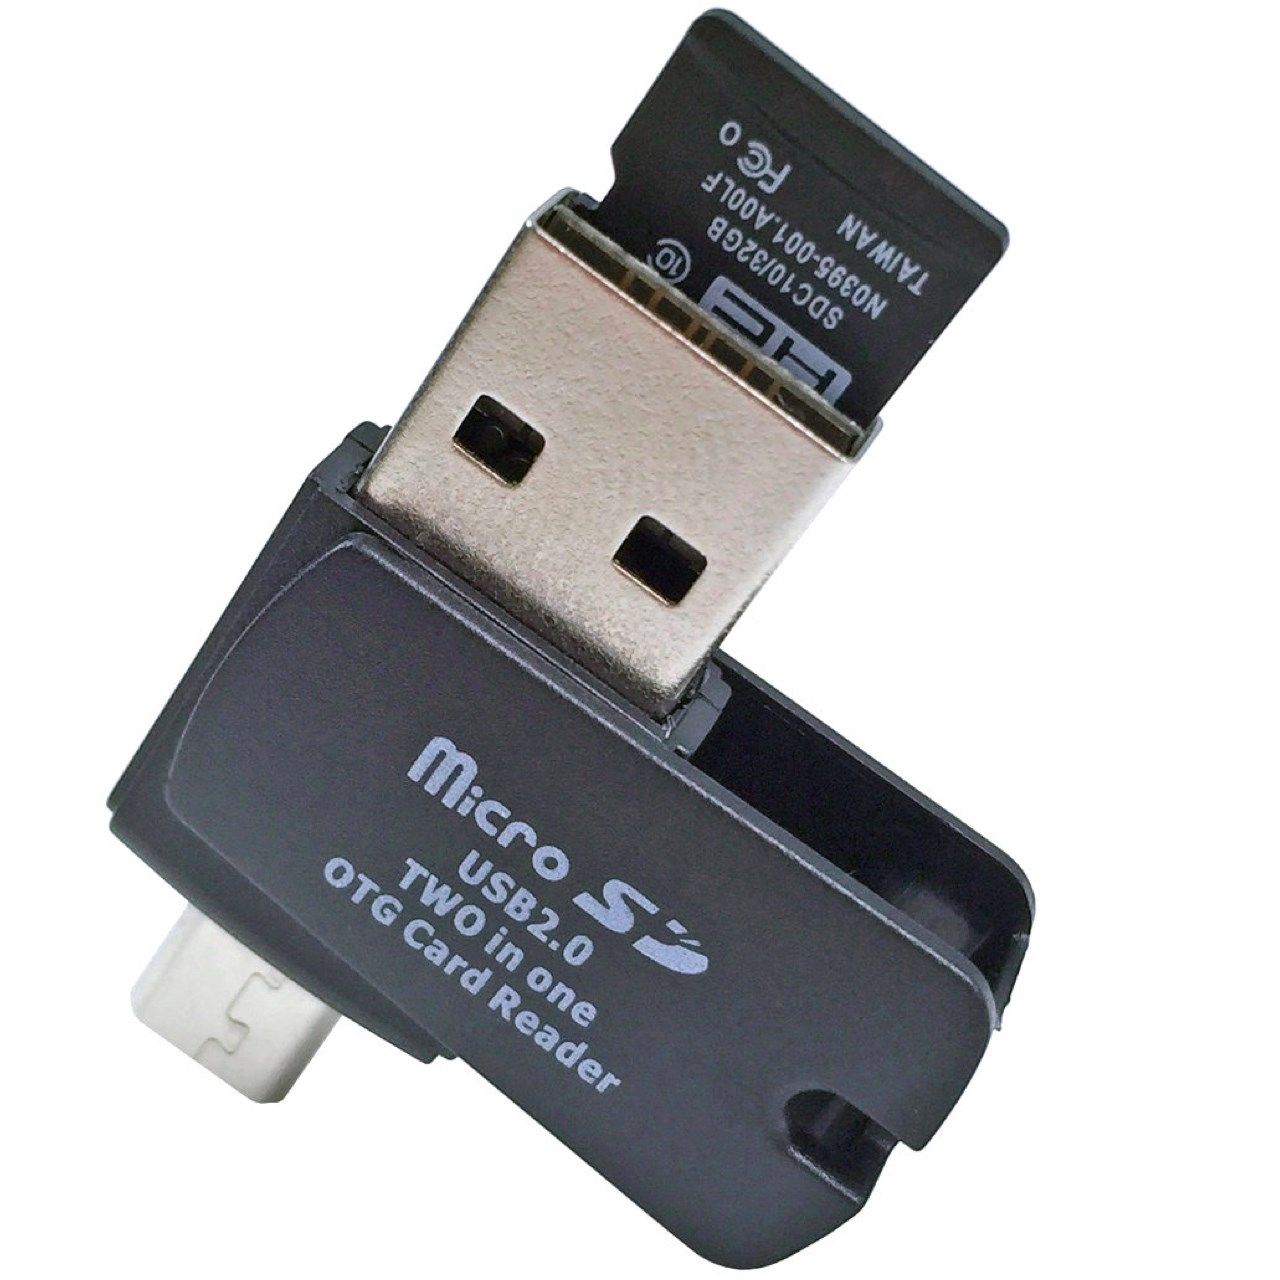 کارت خوان USB 2.0 و MicroUSB OTG ای نت مدل Smart